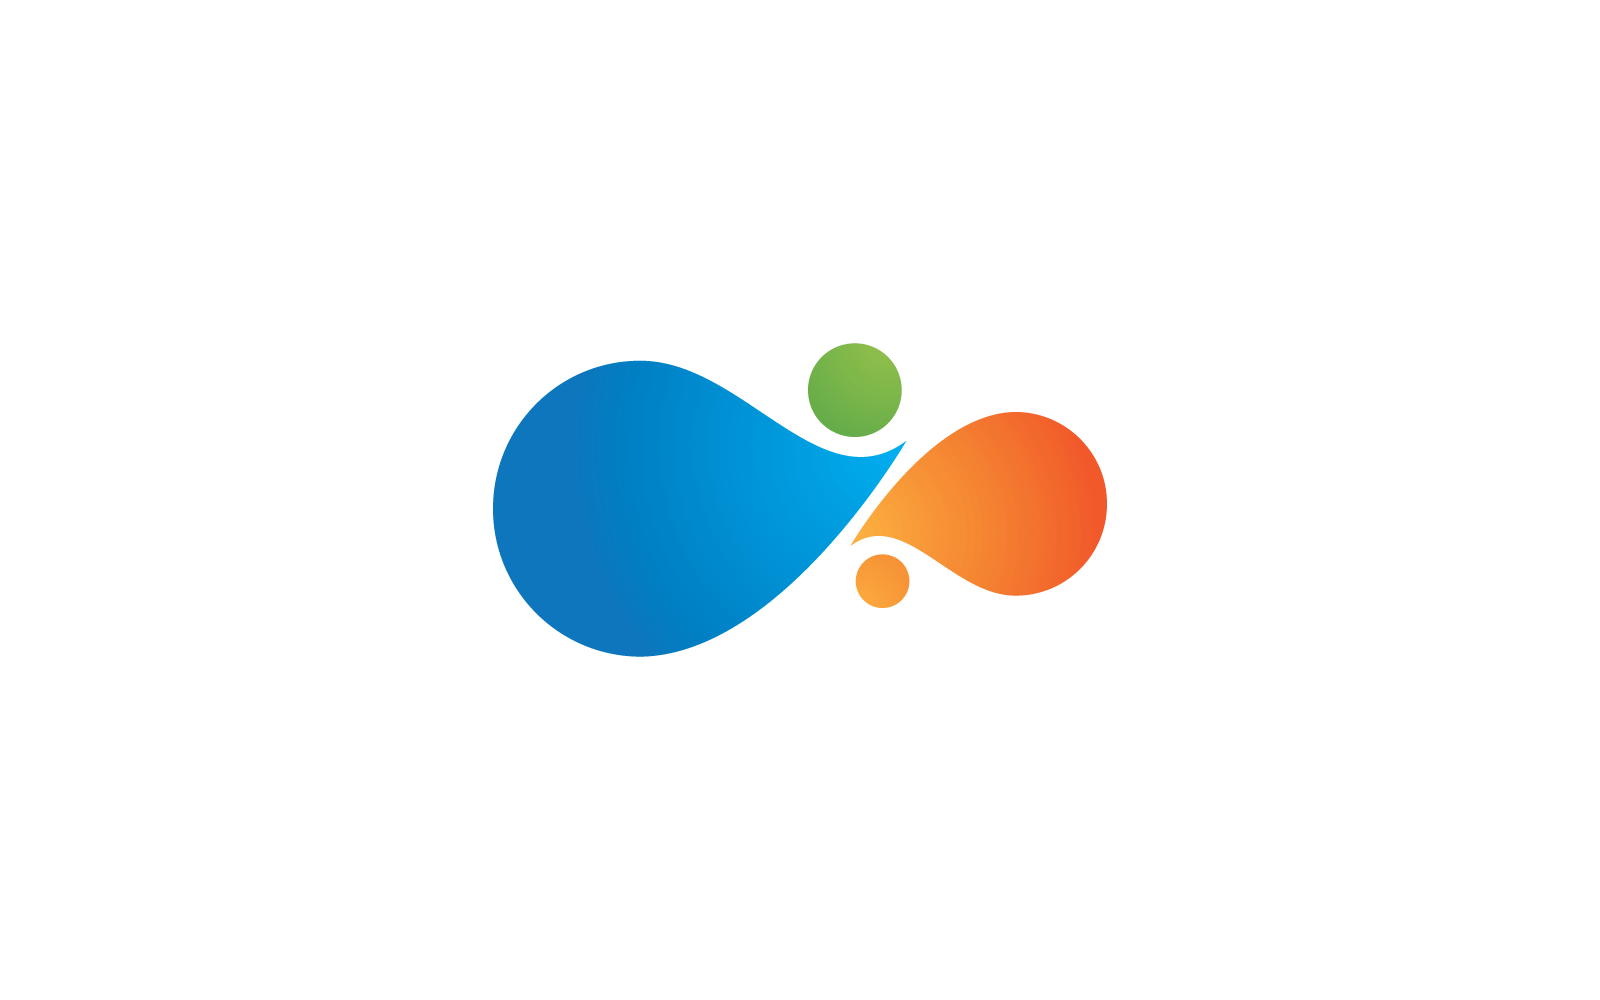 Molecule logo illustration design icon vector